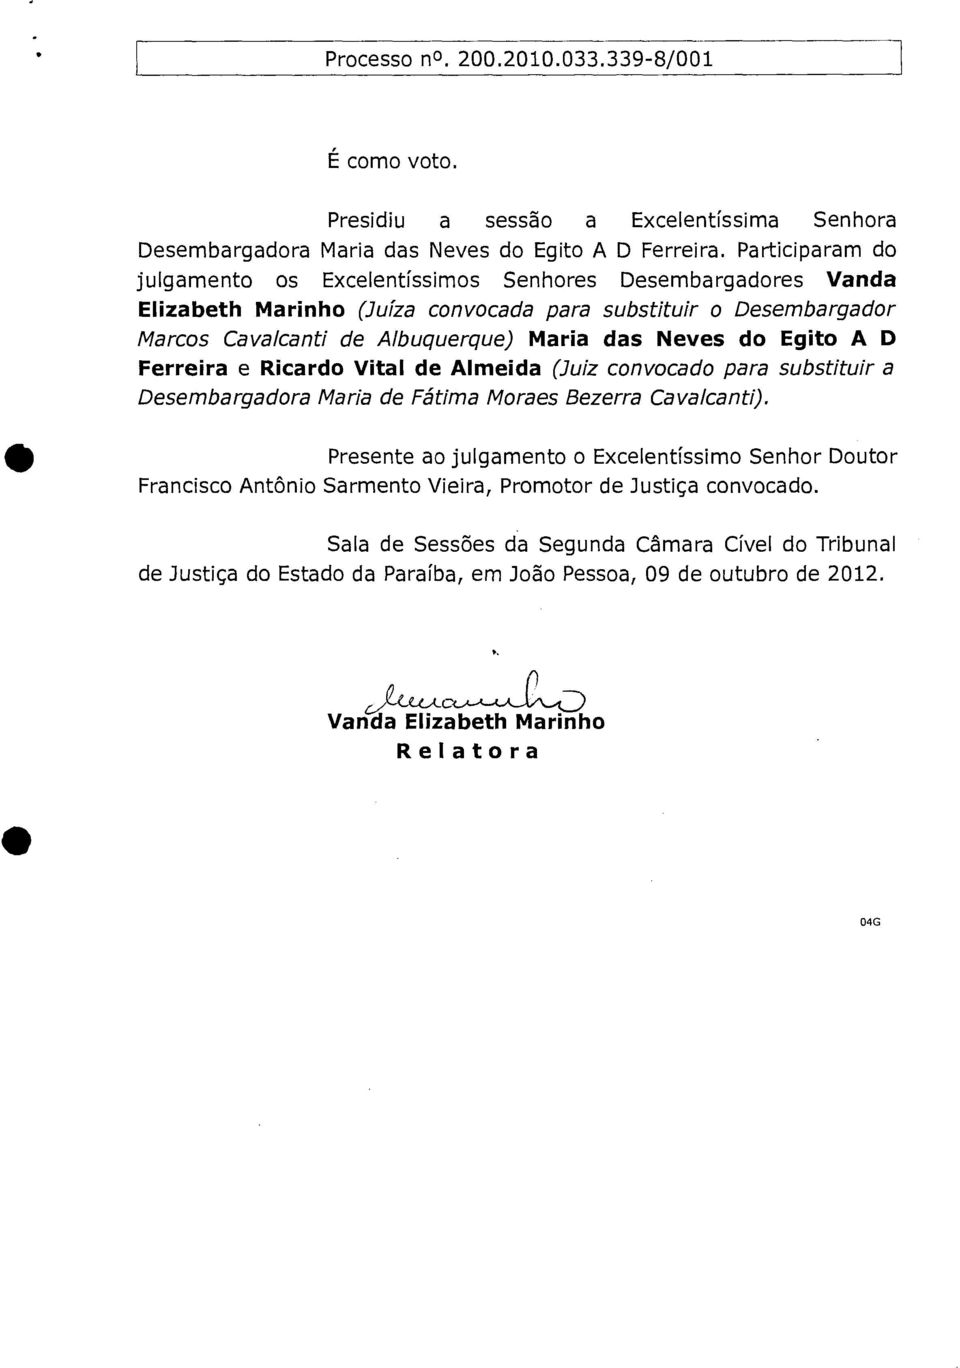 das Neves do Egito A D Ferreira e Ricardo Vital de Almeida (Juiz convocado para substituir a Desembargadora Maria de Fátima Moraes Bezerra Cavalcanti).